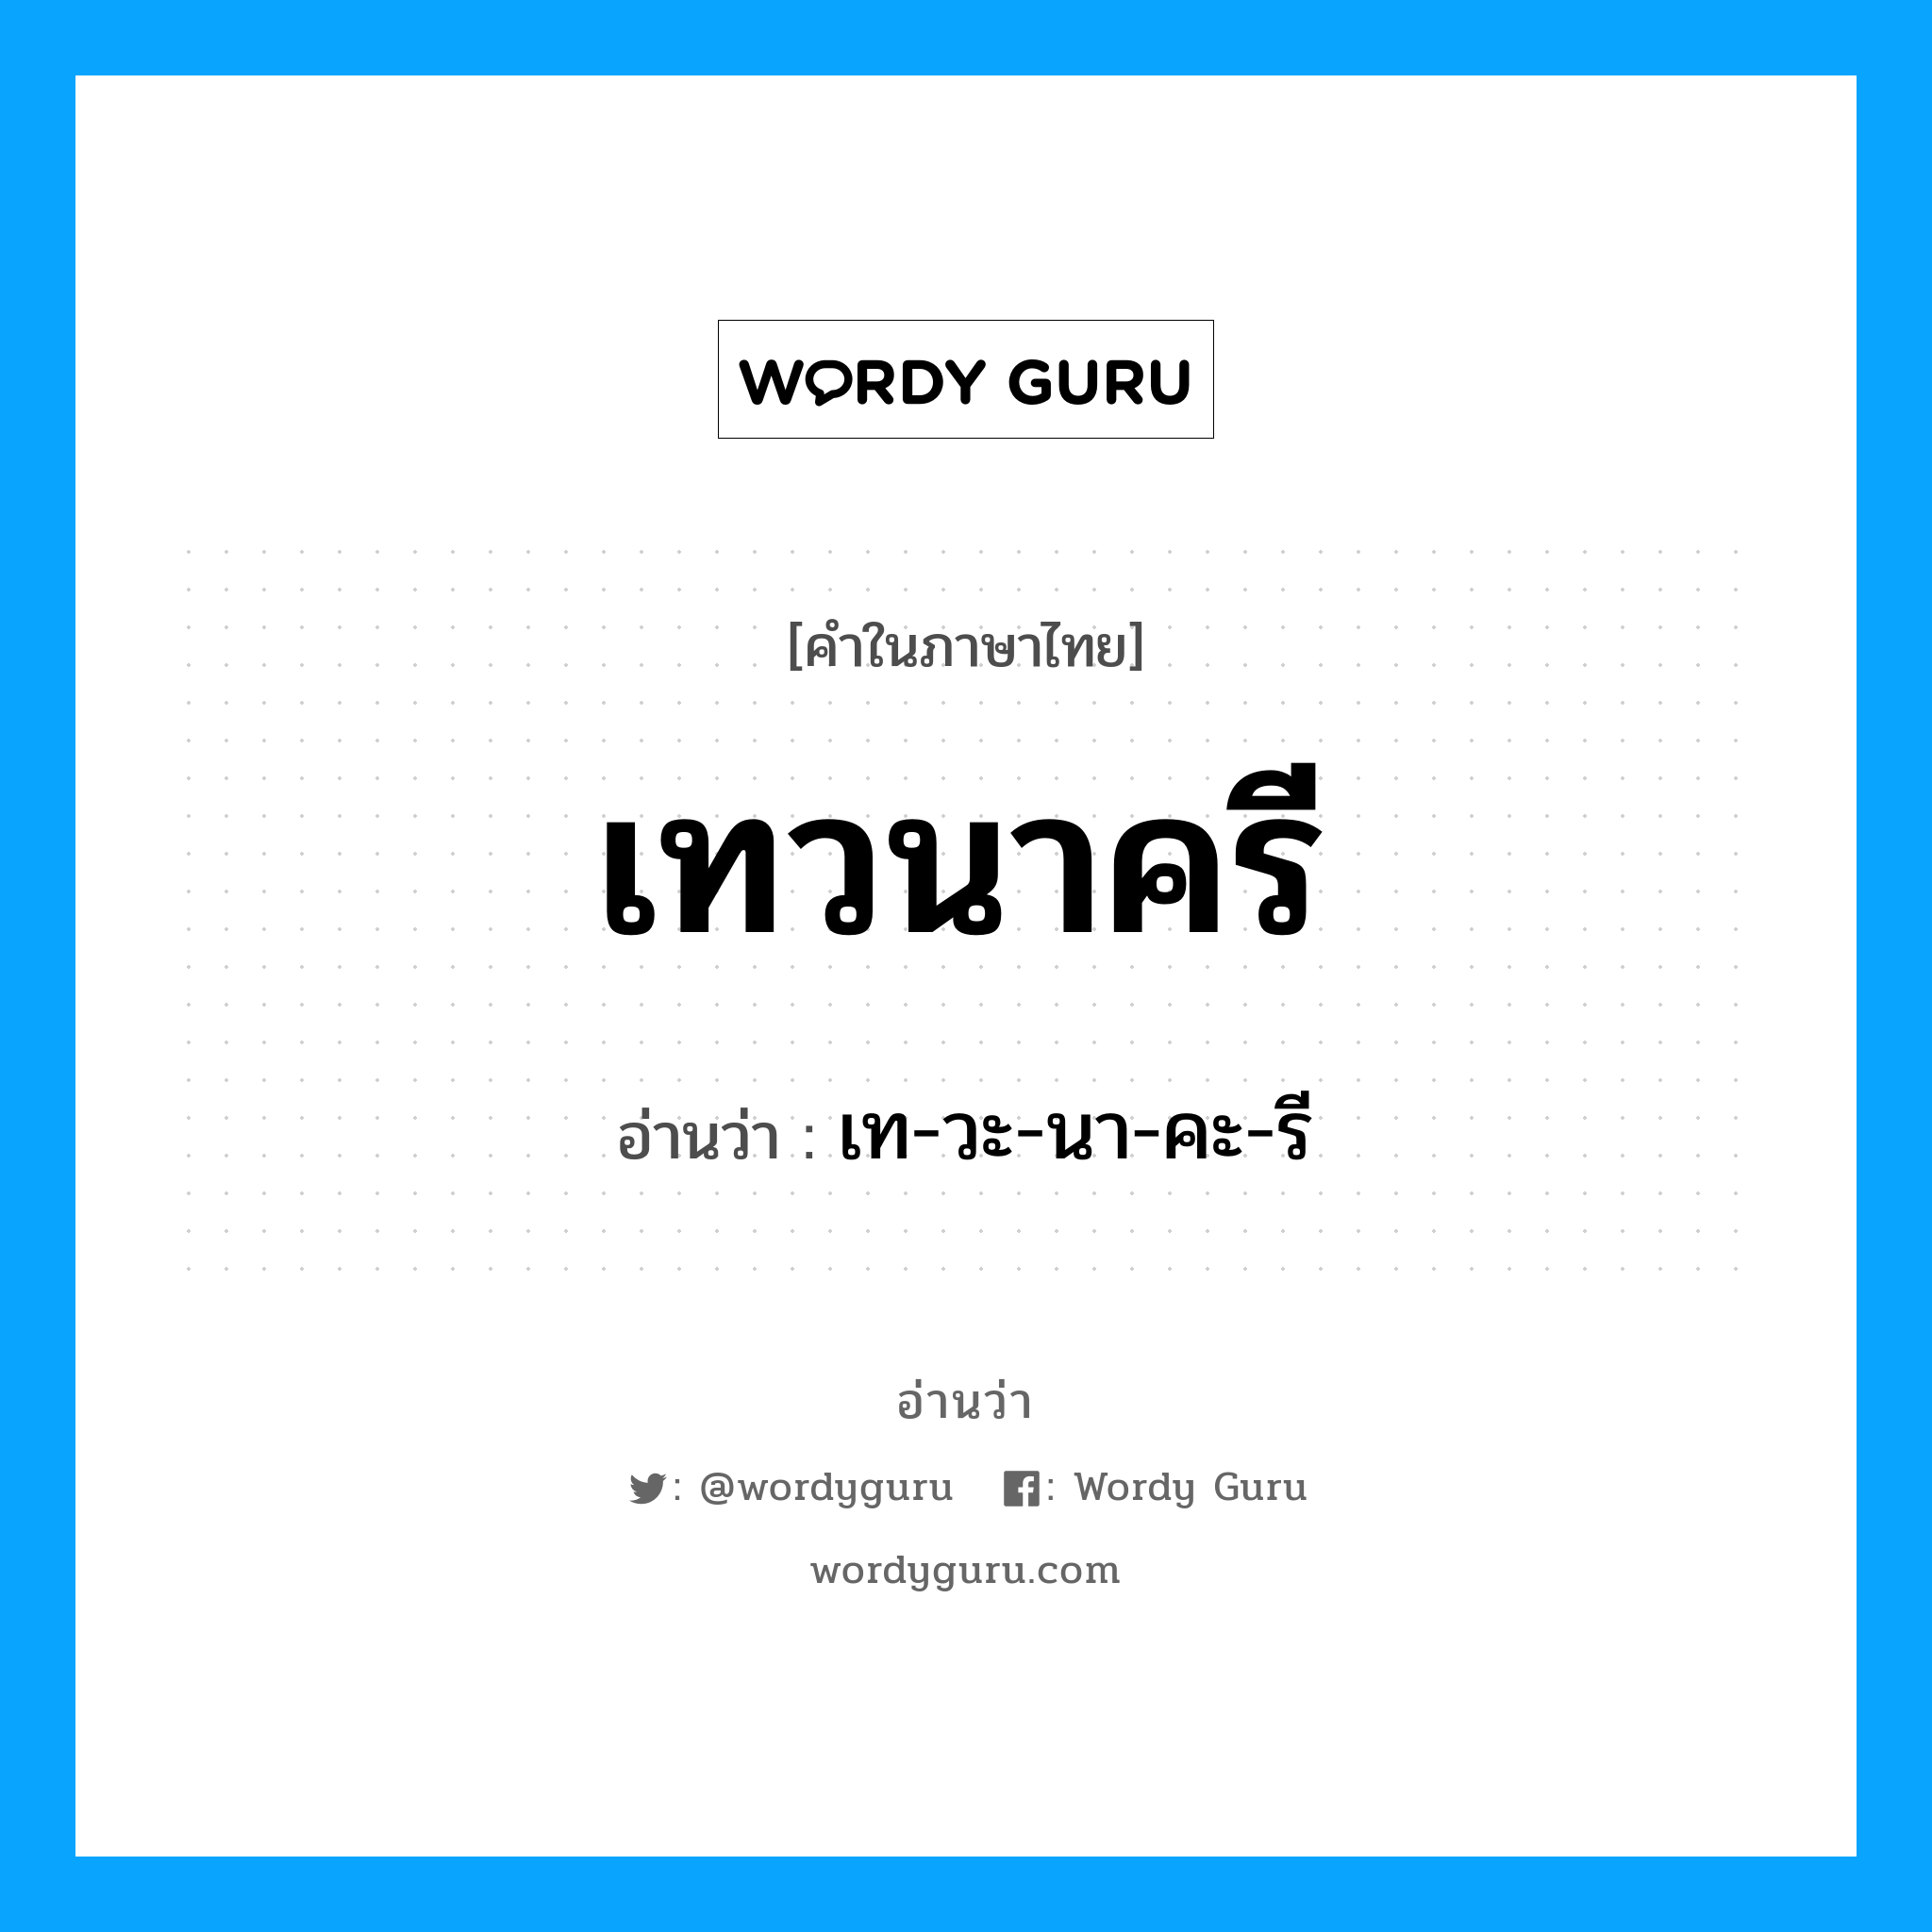 เท-วะ-นา-คะ-รี เป็นคำอ่านของคำไหน?, คำในภาษาไทย เท-วะ-นา-คะ-รี อ่านว่า เทวนาครี